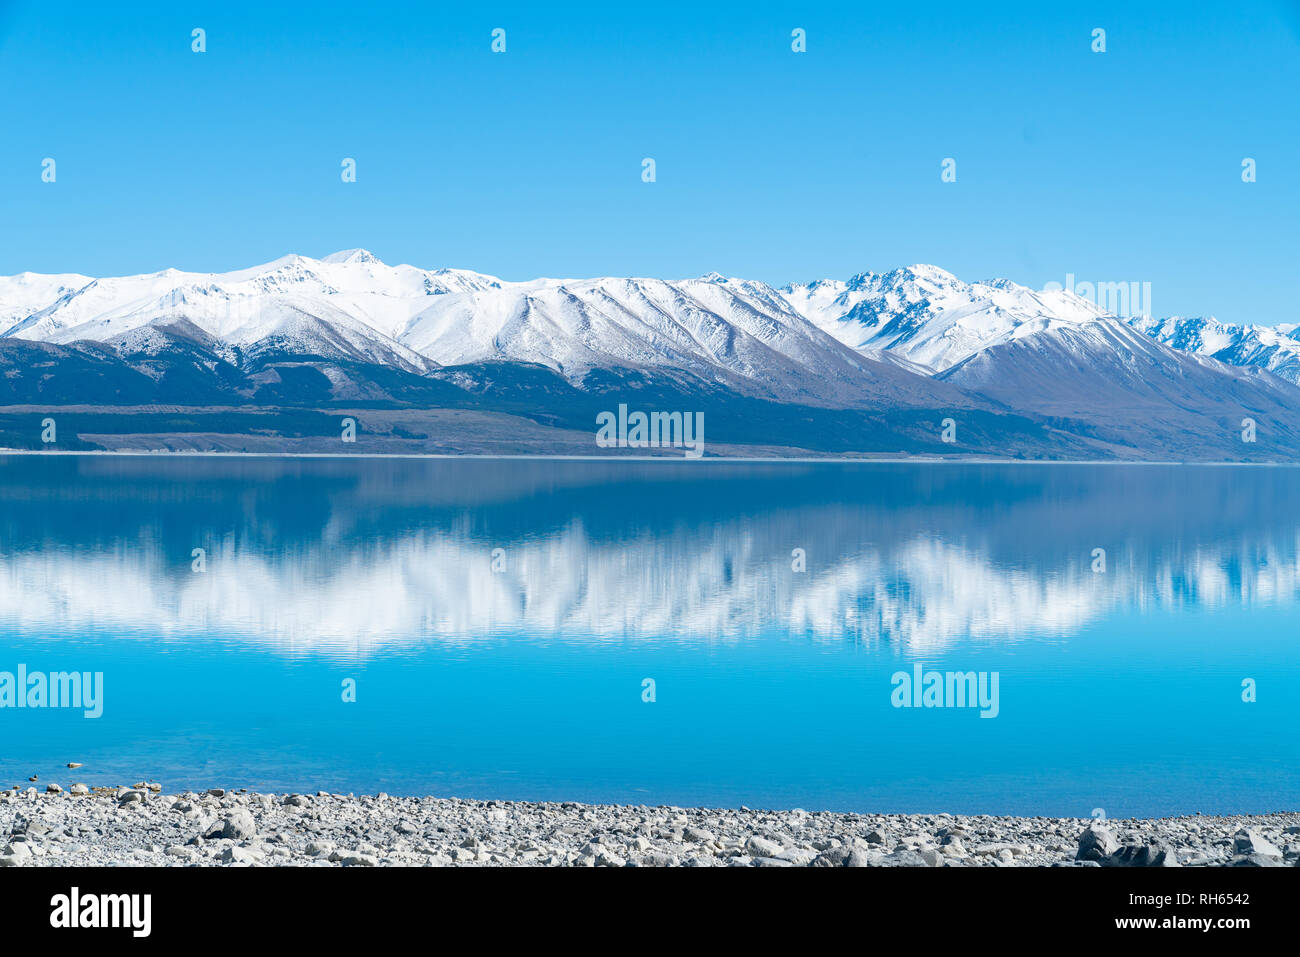 Montagne innevate si riflette in tranquilla il pittoresco Lago Pukaki nel Bacino di Mackenzie Canterbury,NZ Foto Stock